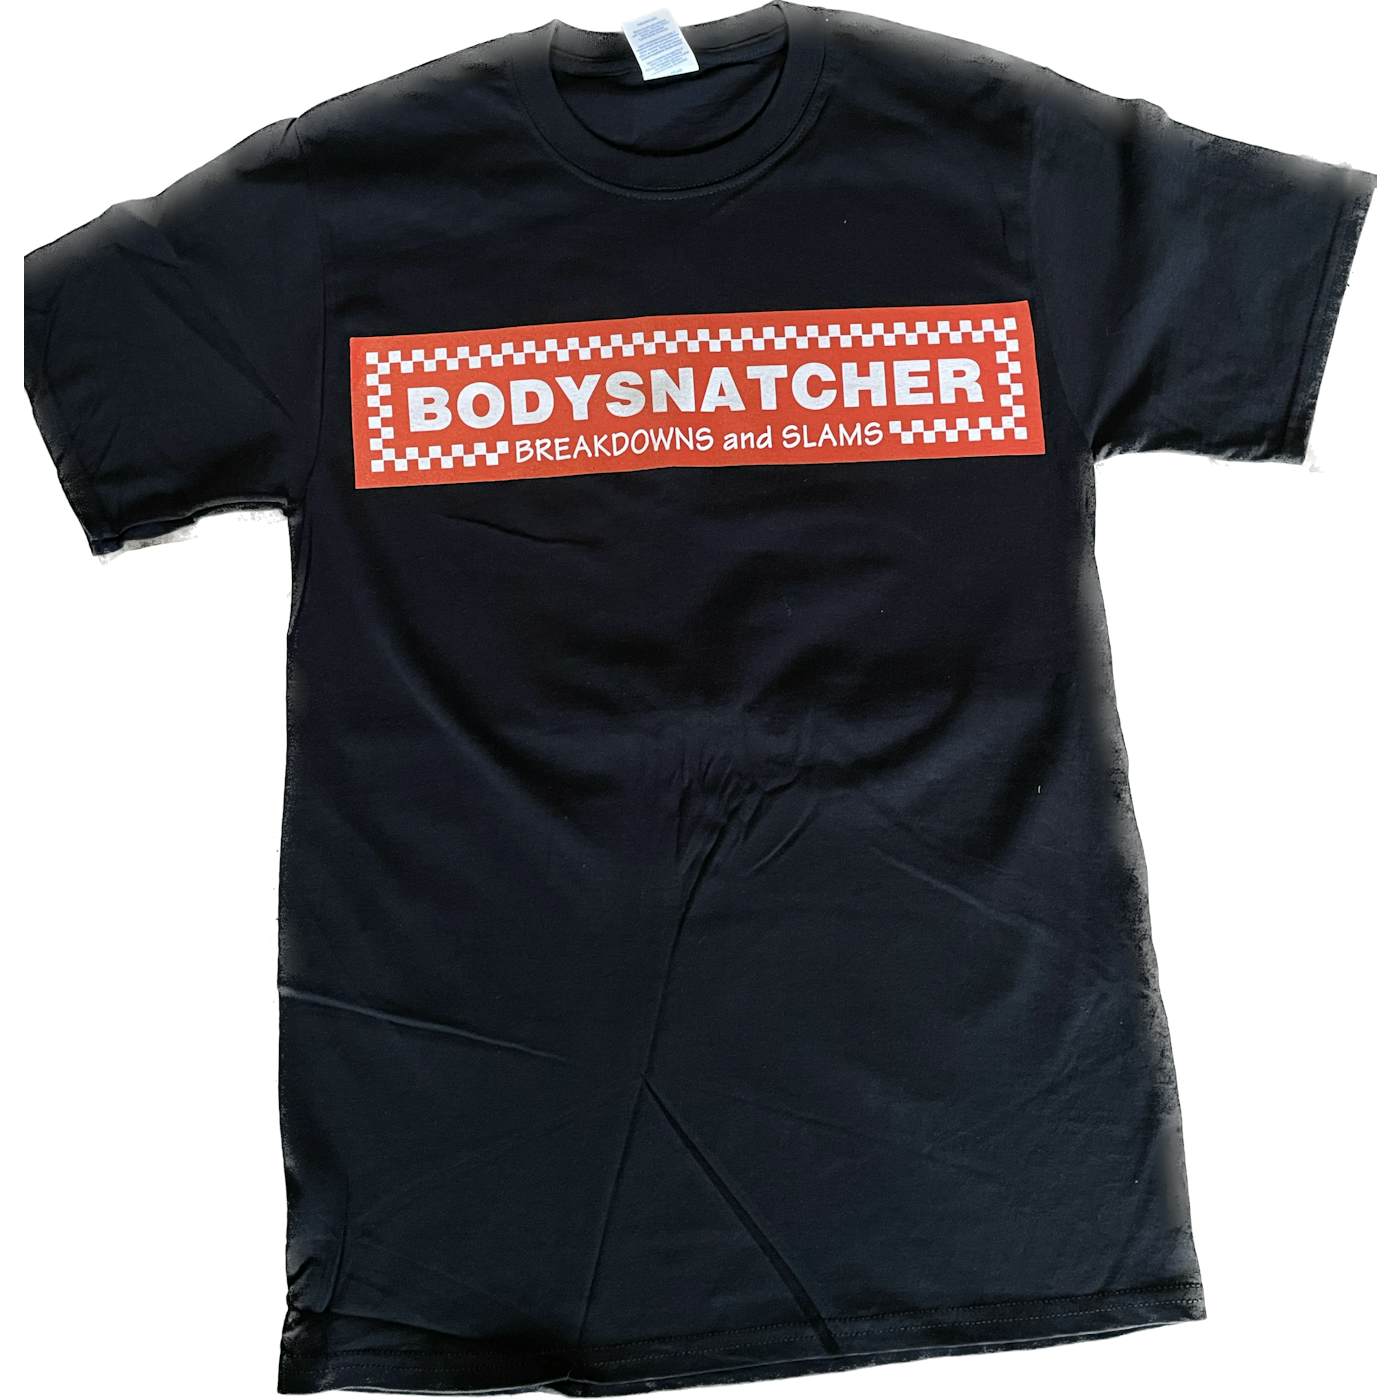 Bodysnatcher 5 Guys Burgers T-Shirt